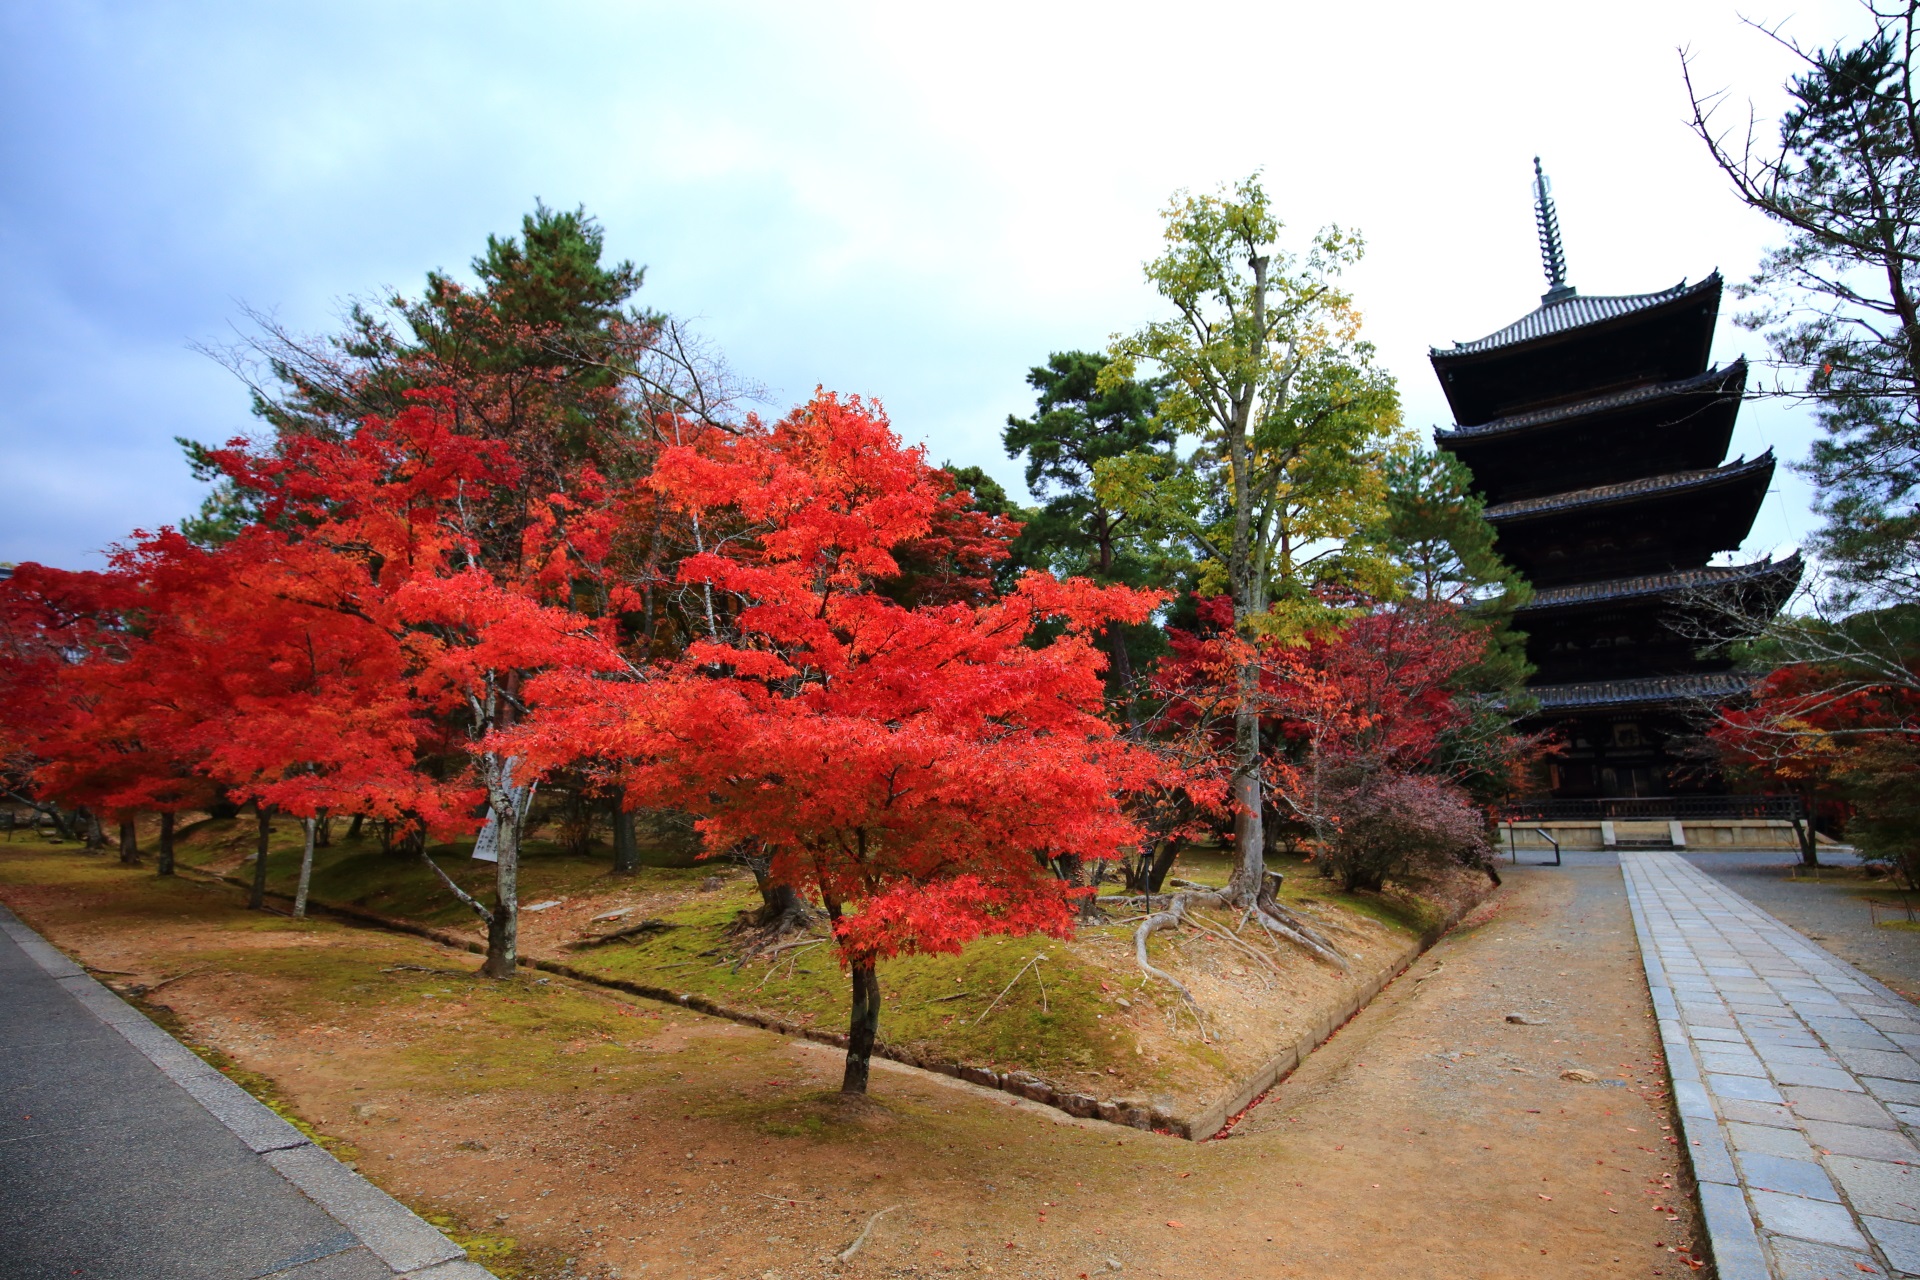 仁和寺の五重塔と鮮やかな朱色の紅葉